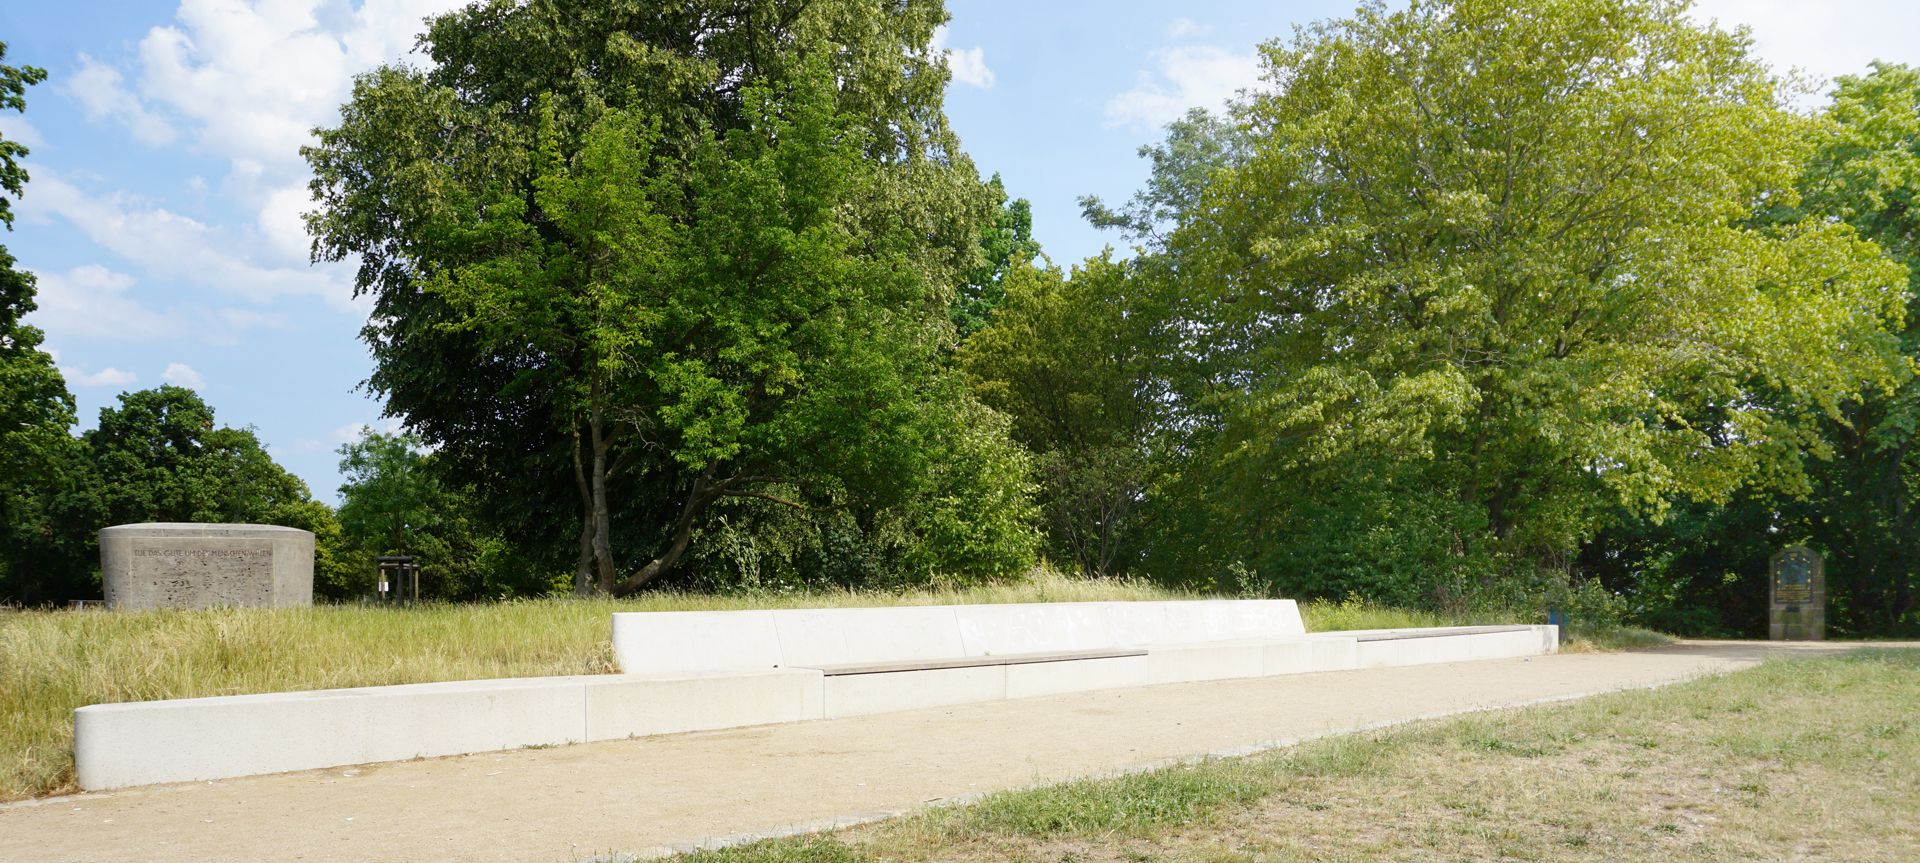 Ludwig Feuerbach Denkmal "Panoramabank" auf dem Rechenberg, links Denkmal von 1955, rechts Gedenktafel von 1906 (Standort seit 1999)